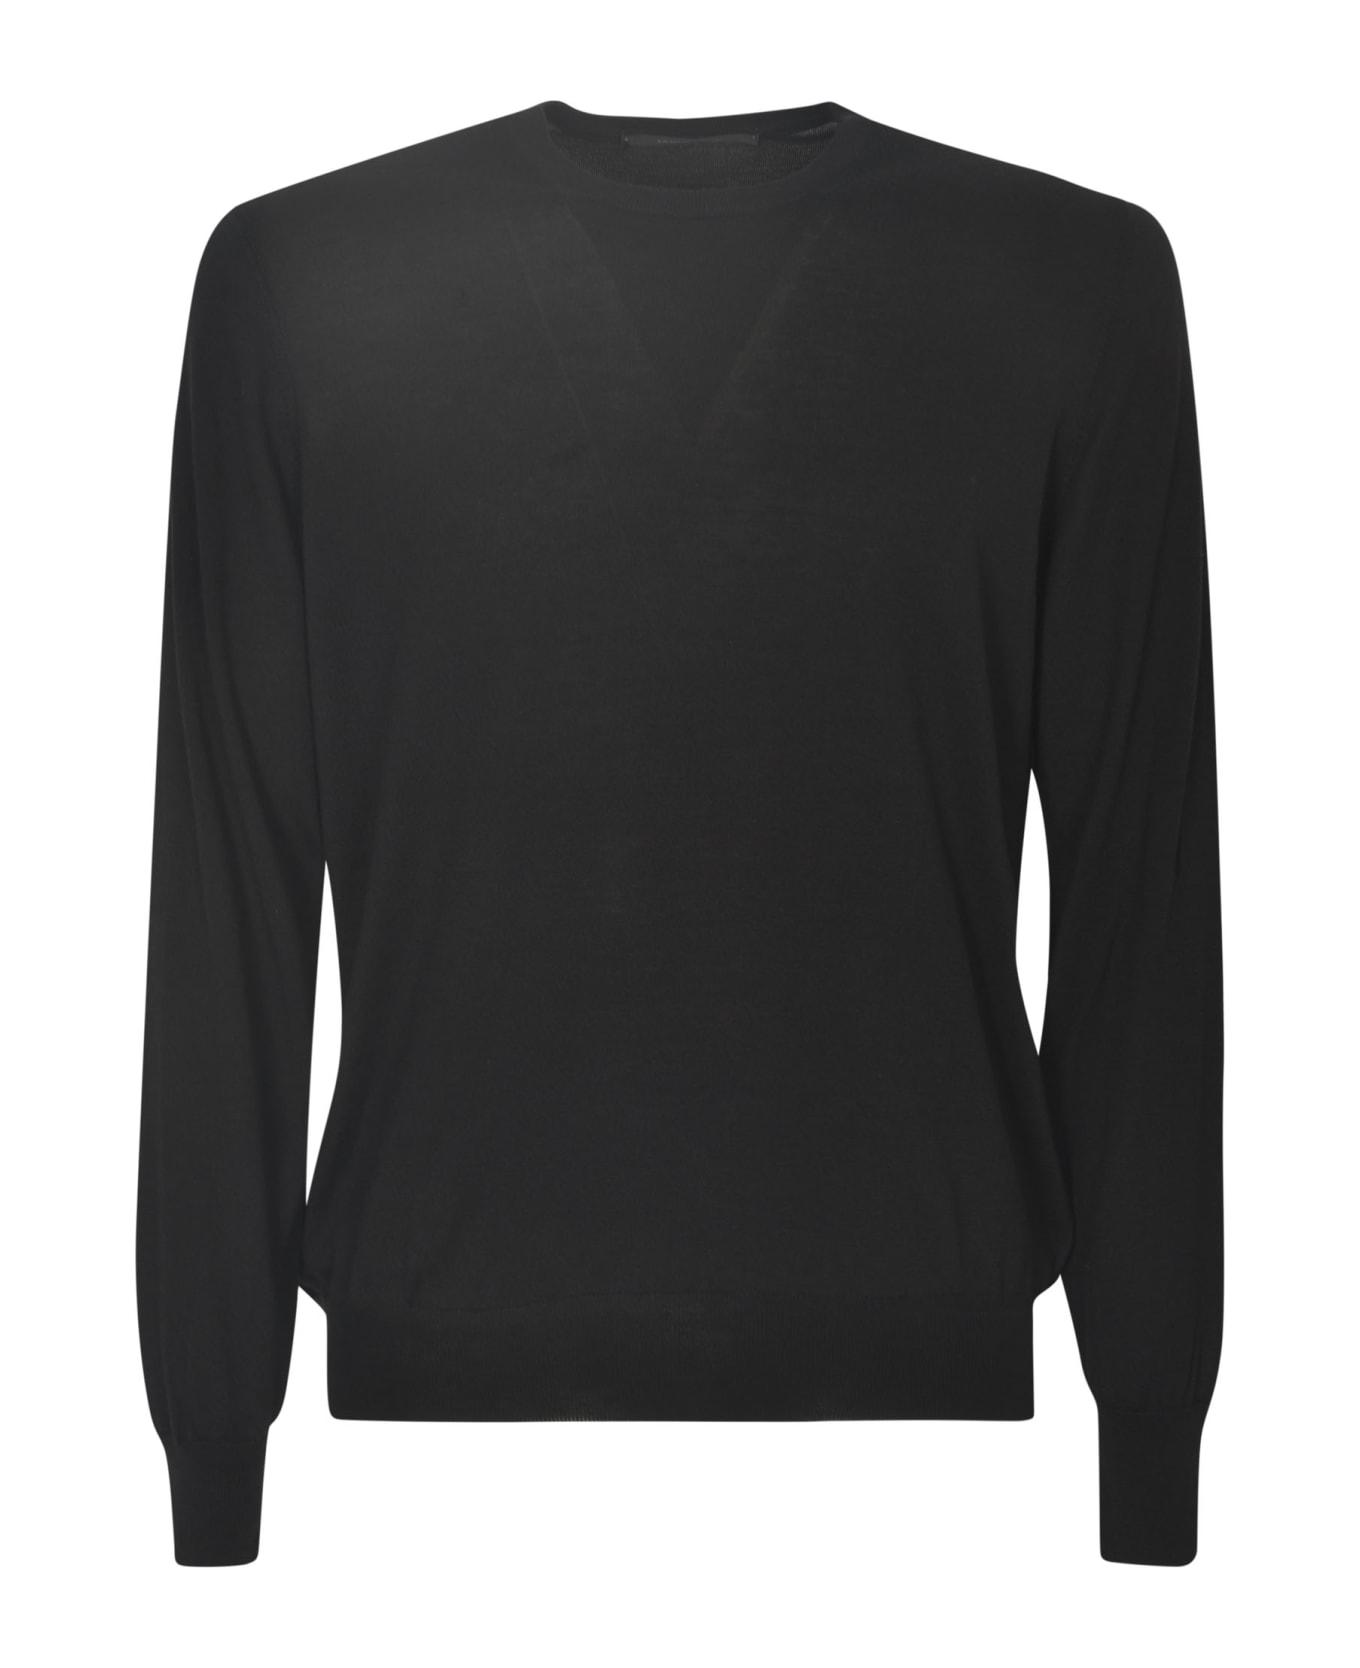 Tagliatore Gray Sweater - Black